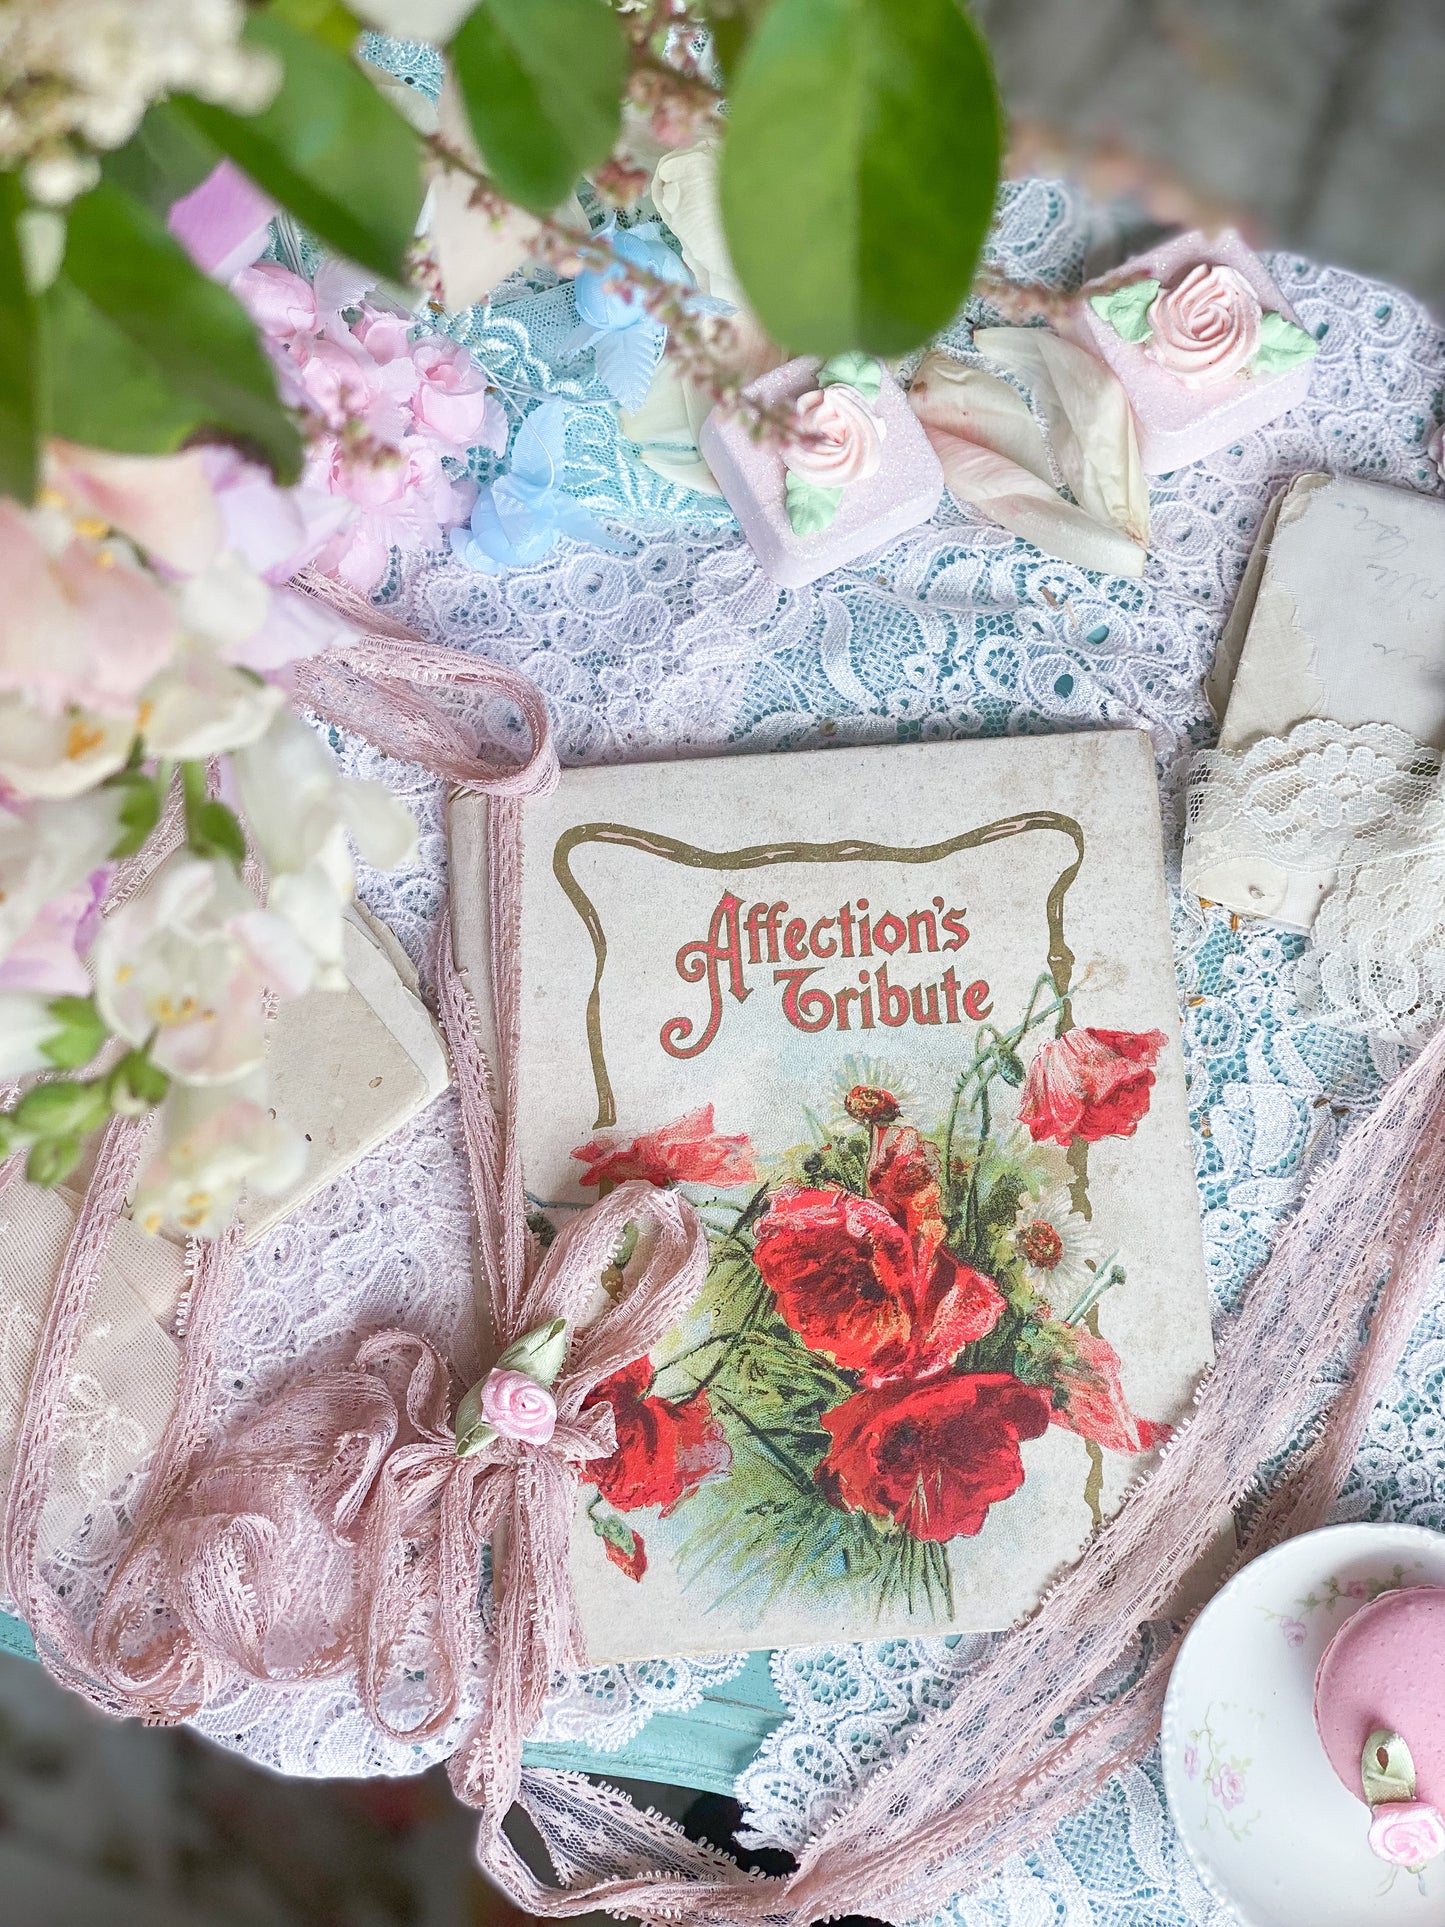 Affection's Tribute – Edwardianisches Geschenkbuch